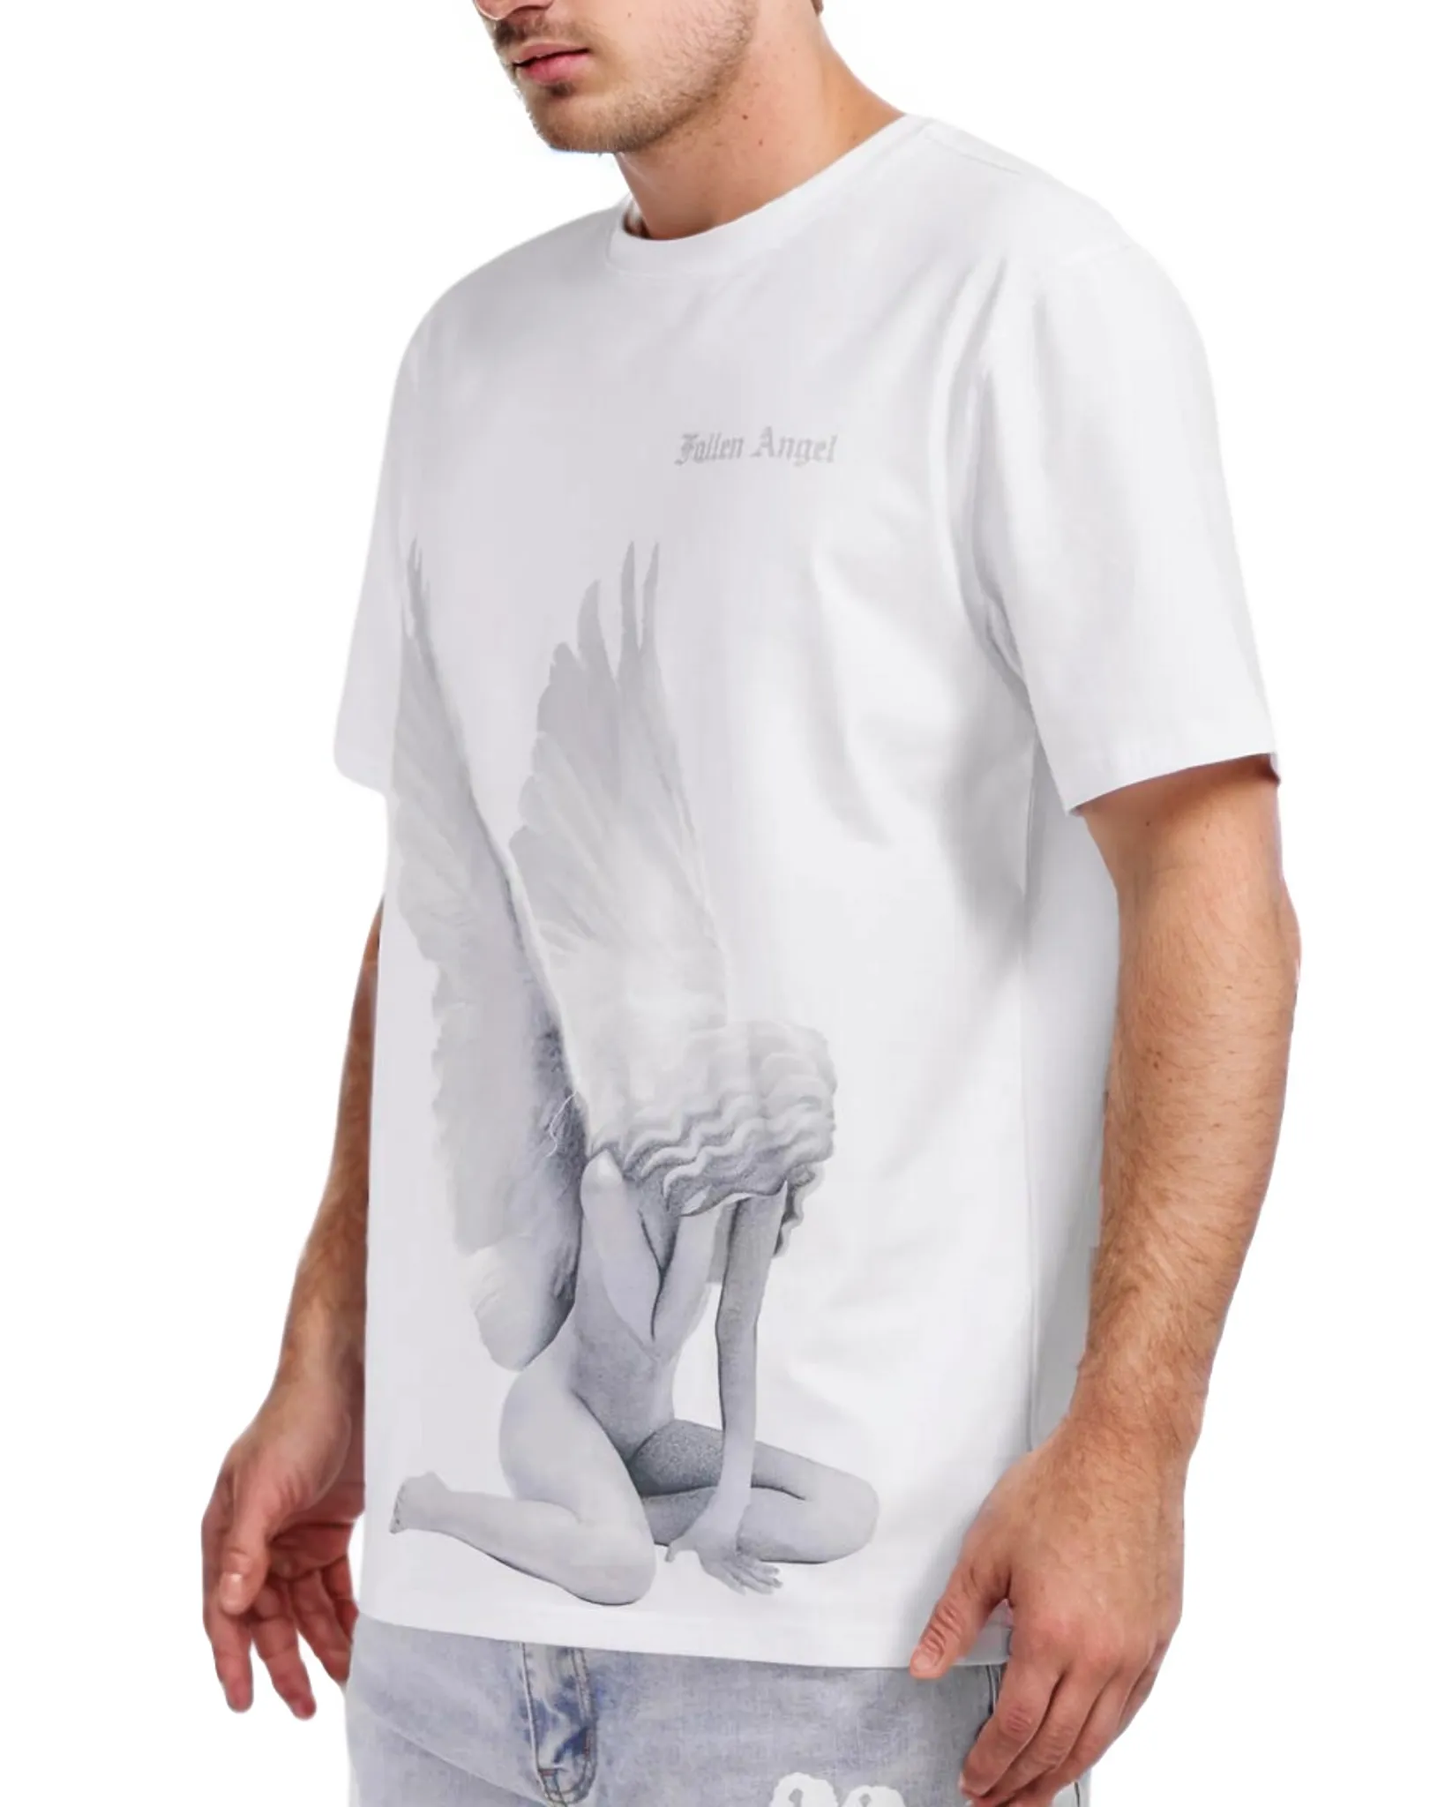 Fallen Angel Shirt 1211